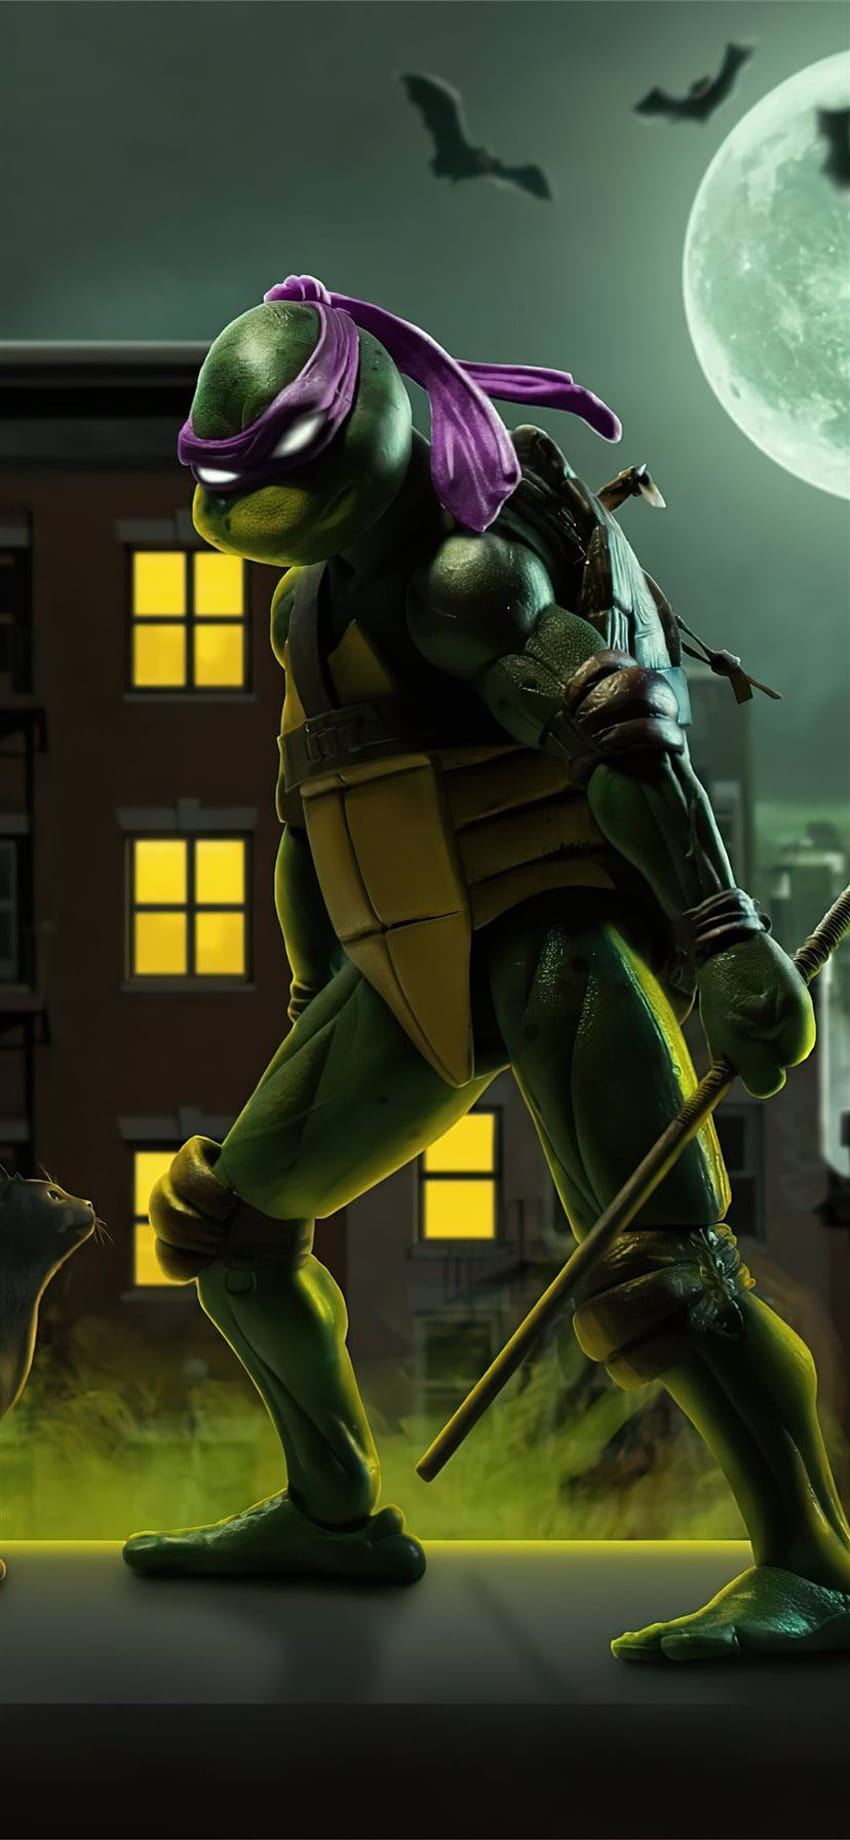 Teenage Mutant Ninja Turtles Phone iPhone X Wallpapers Free Download